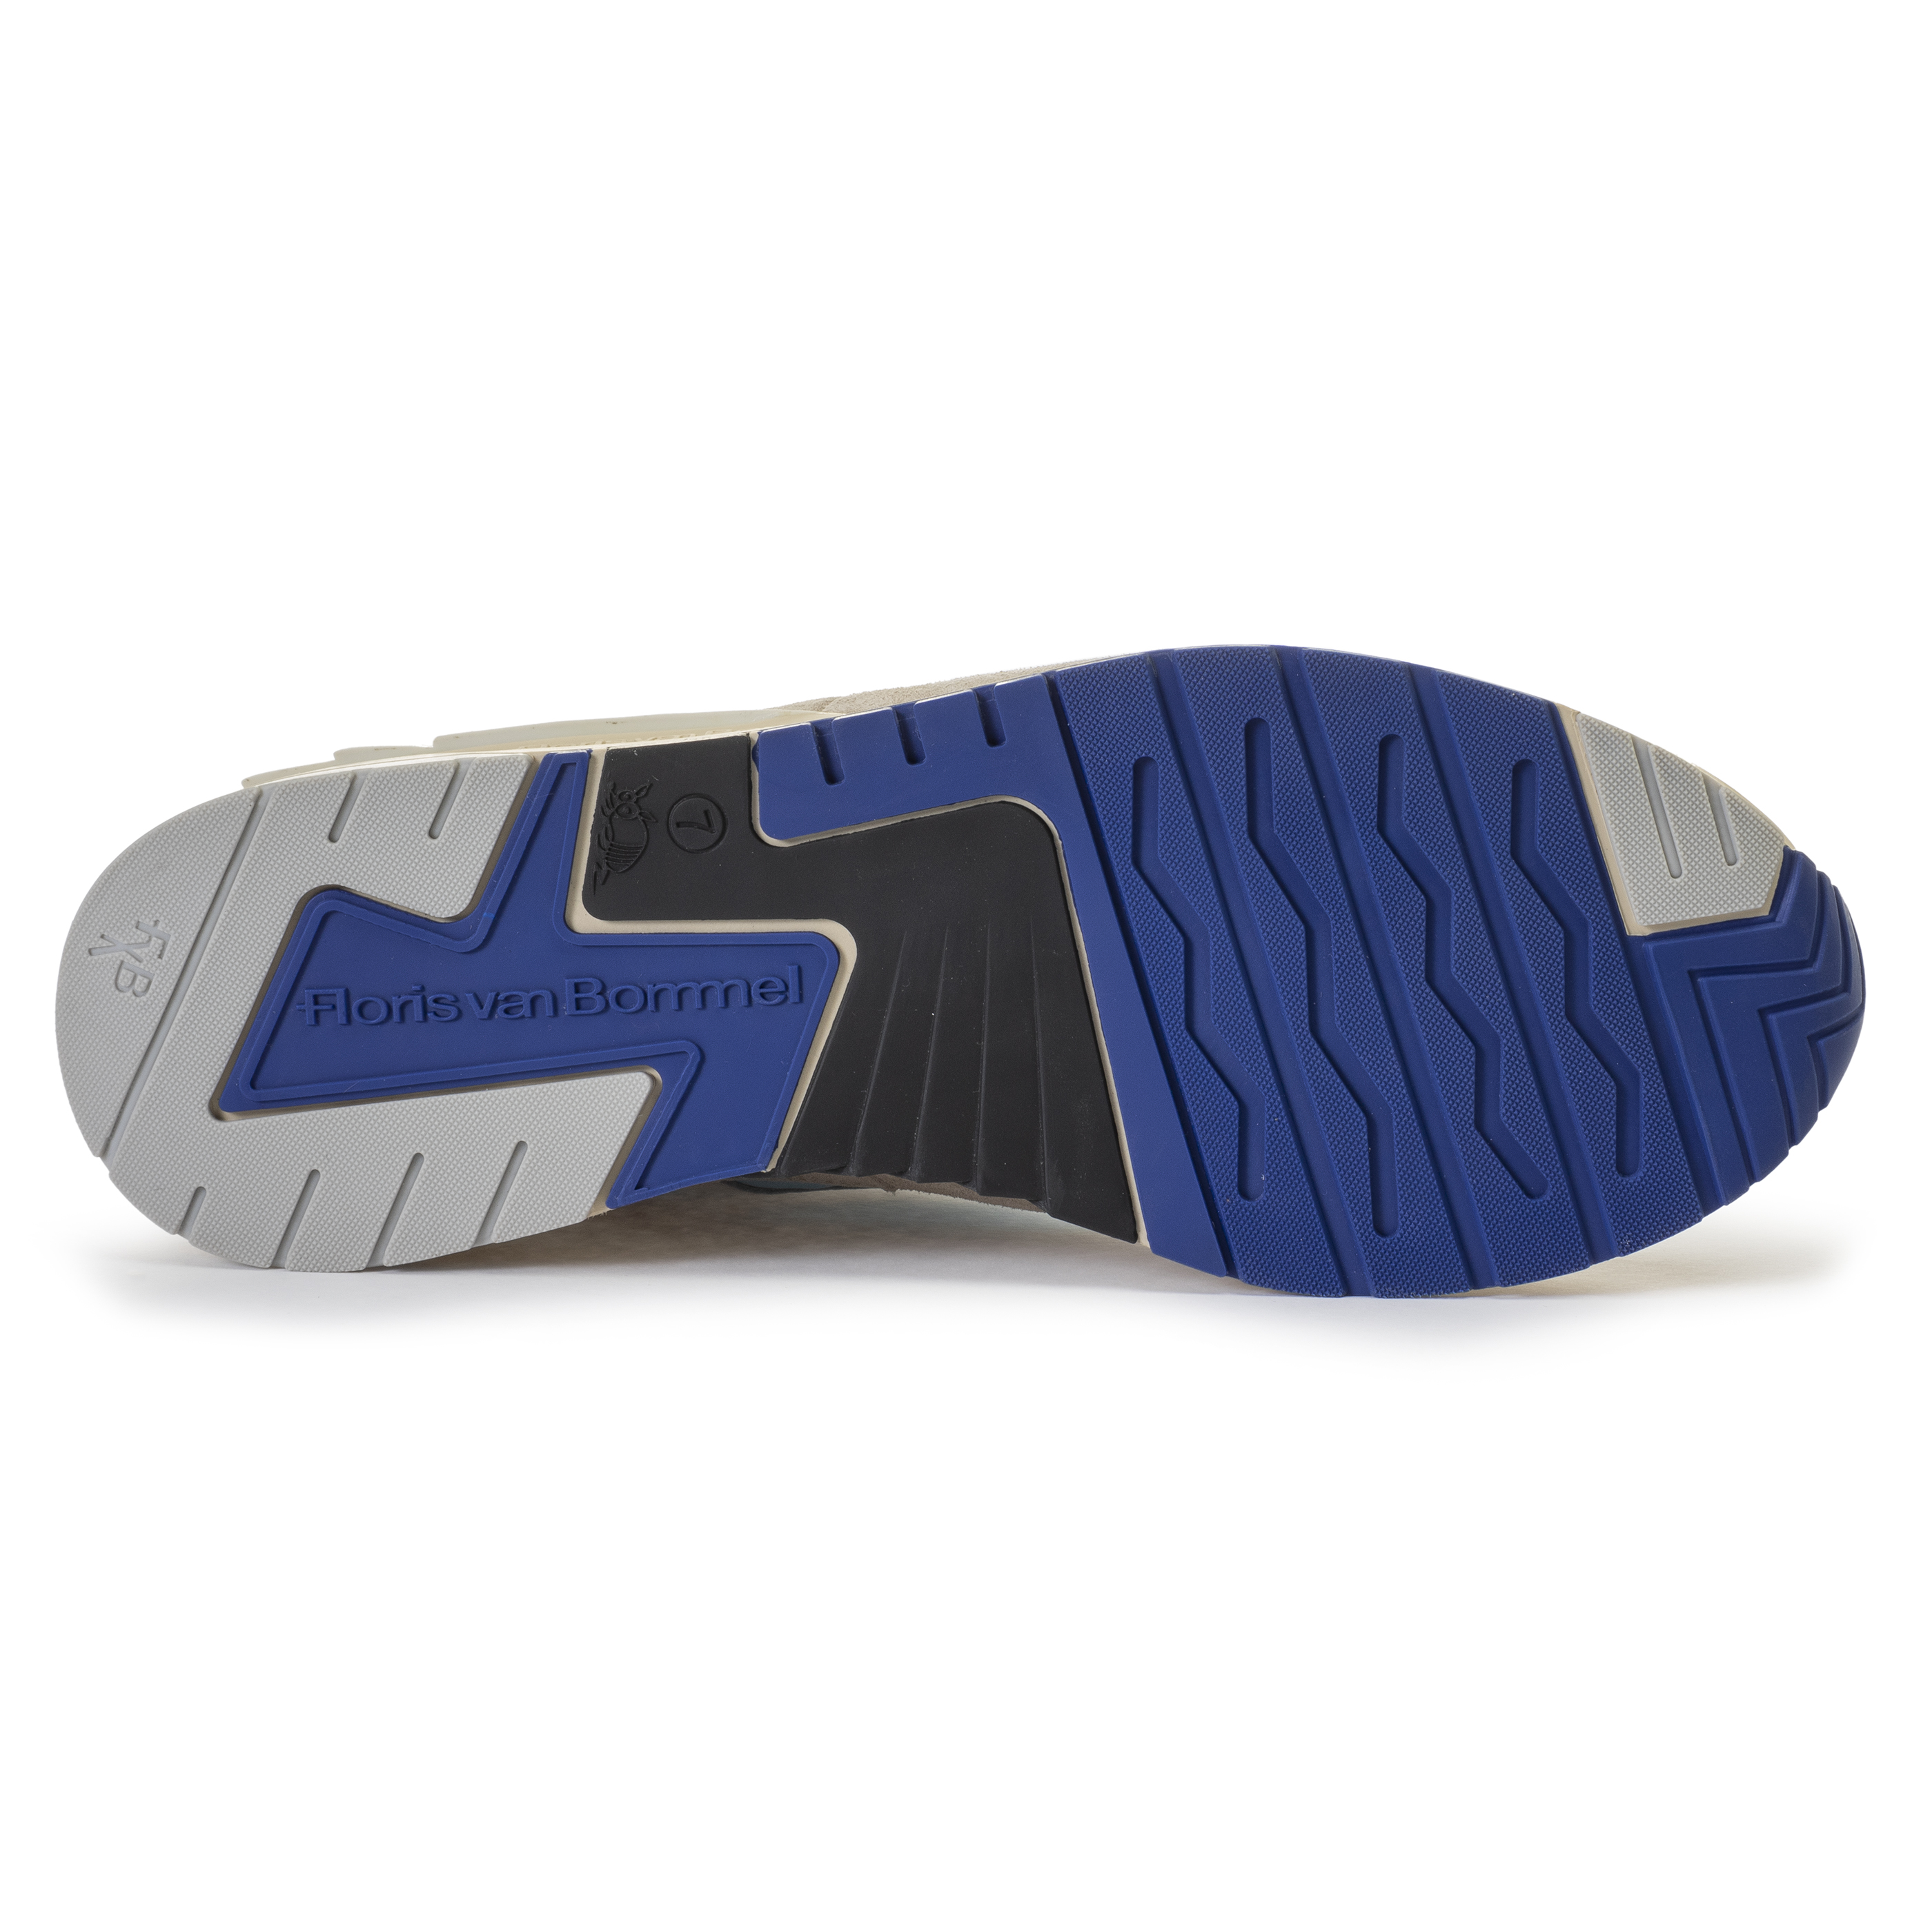 Floris van Bommel SFM-10119 Sneaker De Runner 01.49 Light Blue G